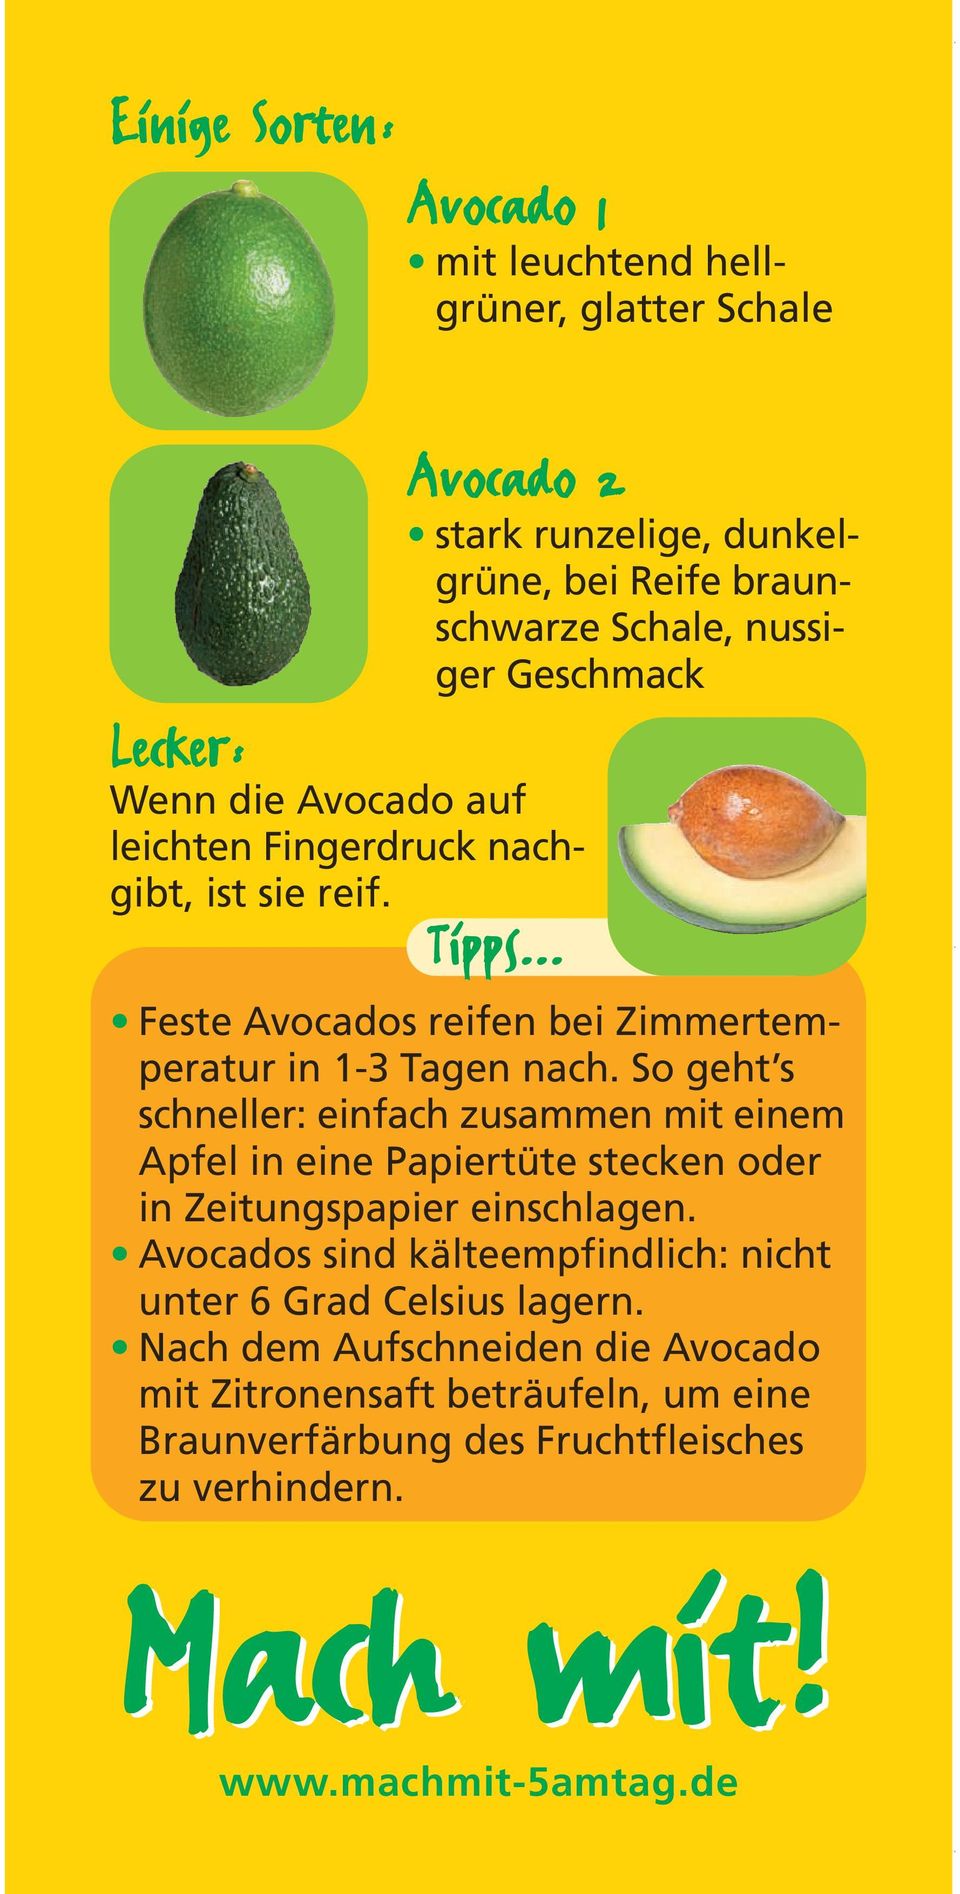 .. Feste Avocados reifen bei Zimmertemperatur in 1-3 Tagen nach.